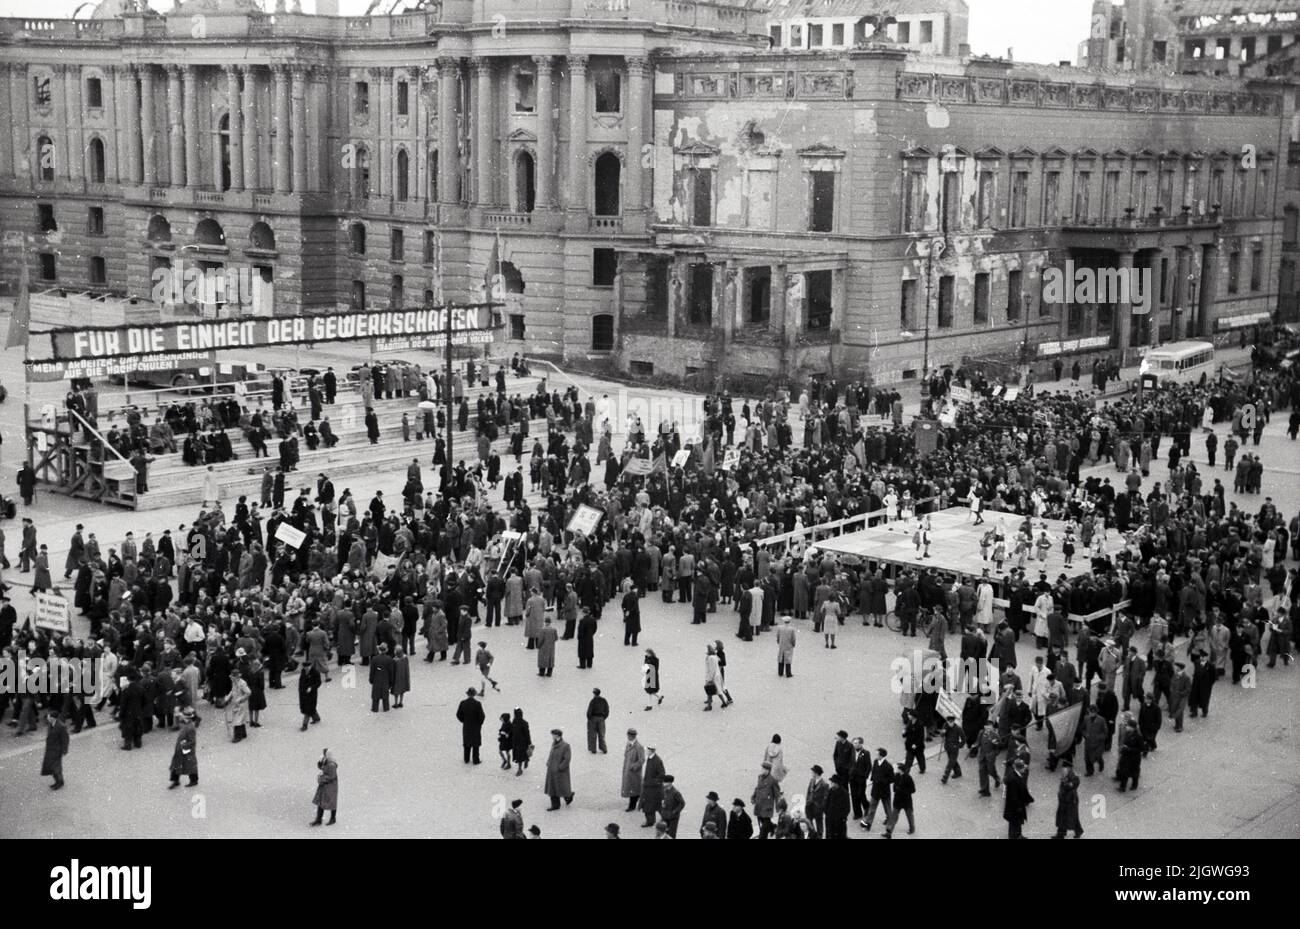 Maifeier Berlin 1947 - Menschenmassen bei der Feier zum 1. Mai vor der Alten Bibliothek am Bebelplatz a Berlino, Germania 1947. Foto Stock